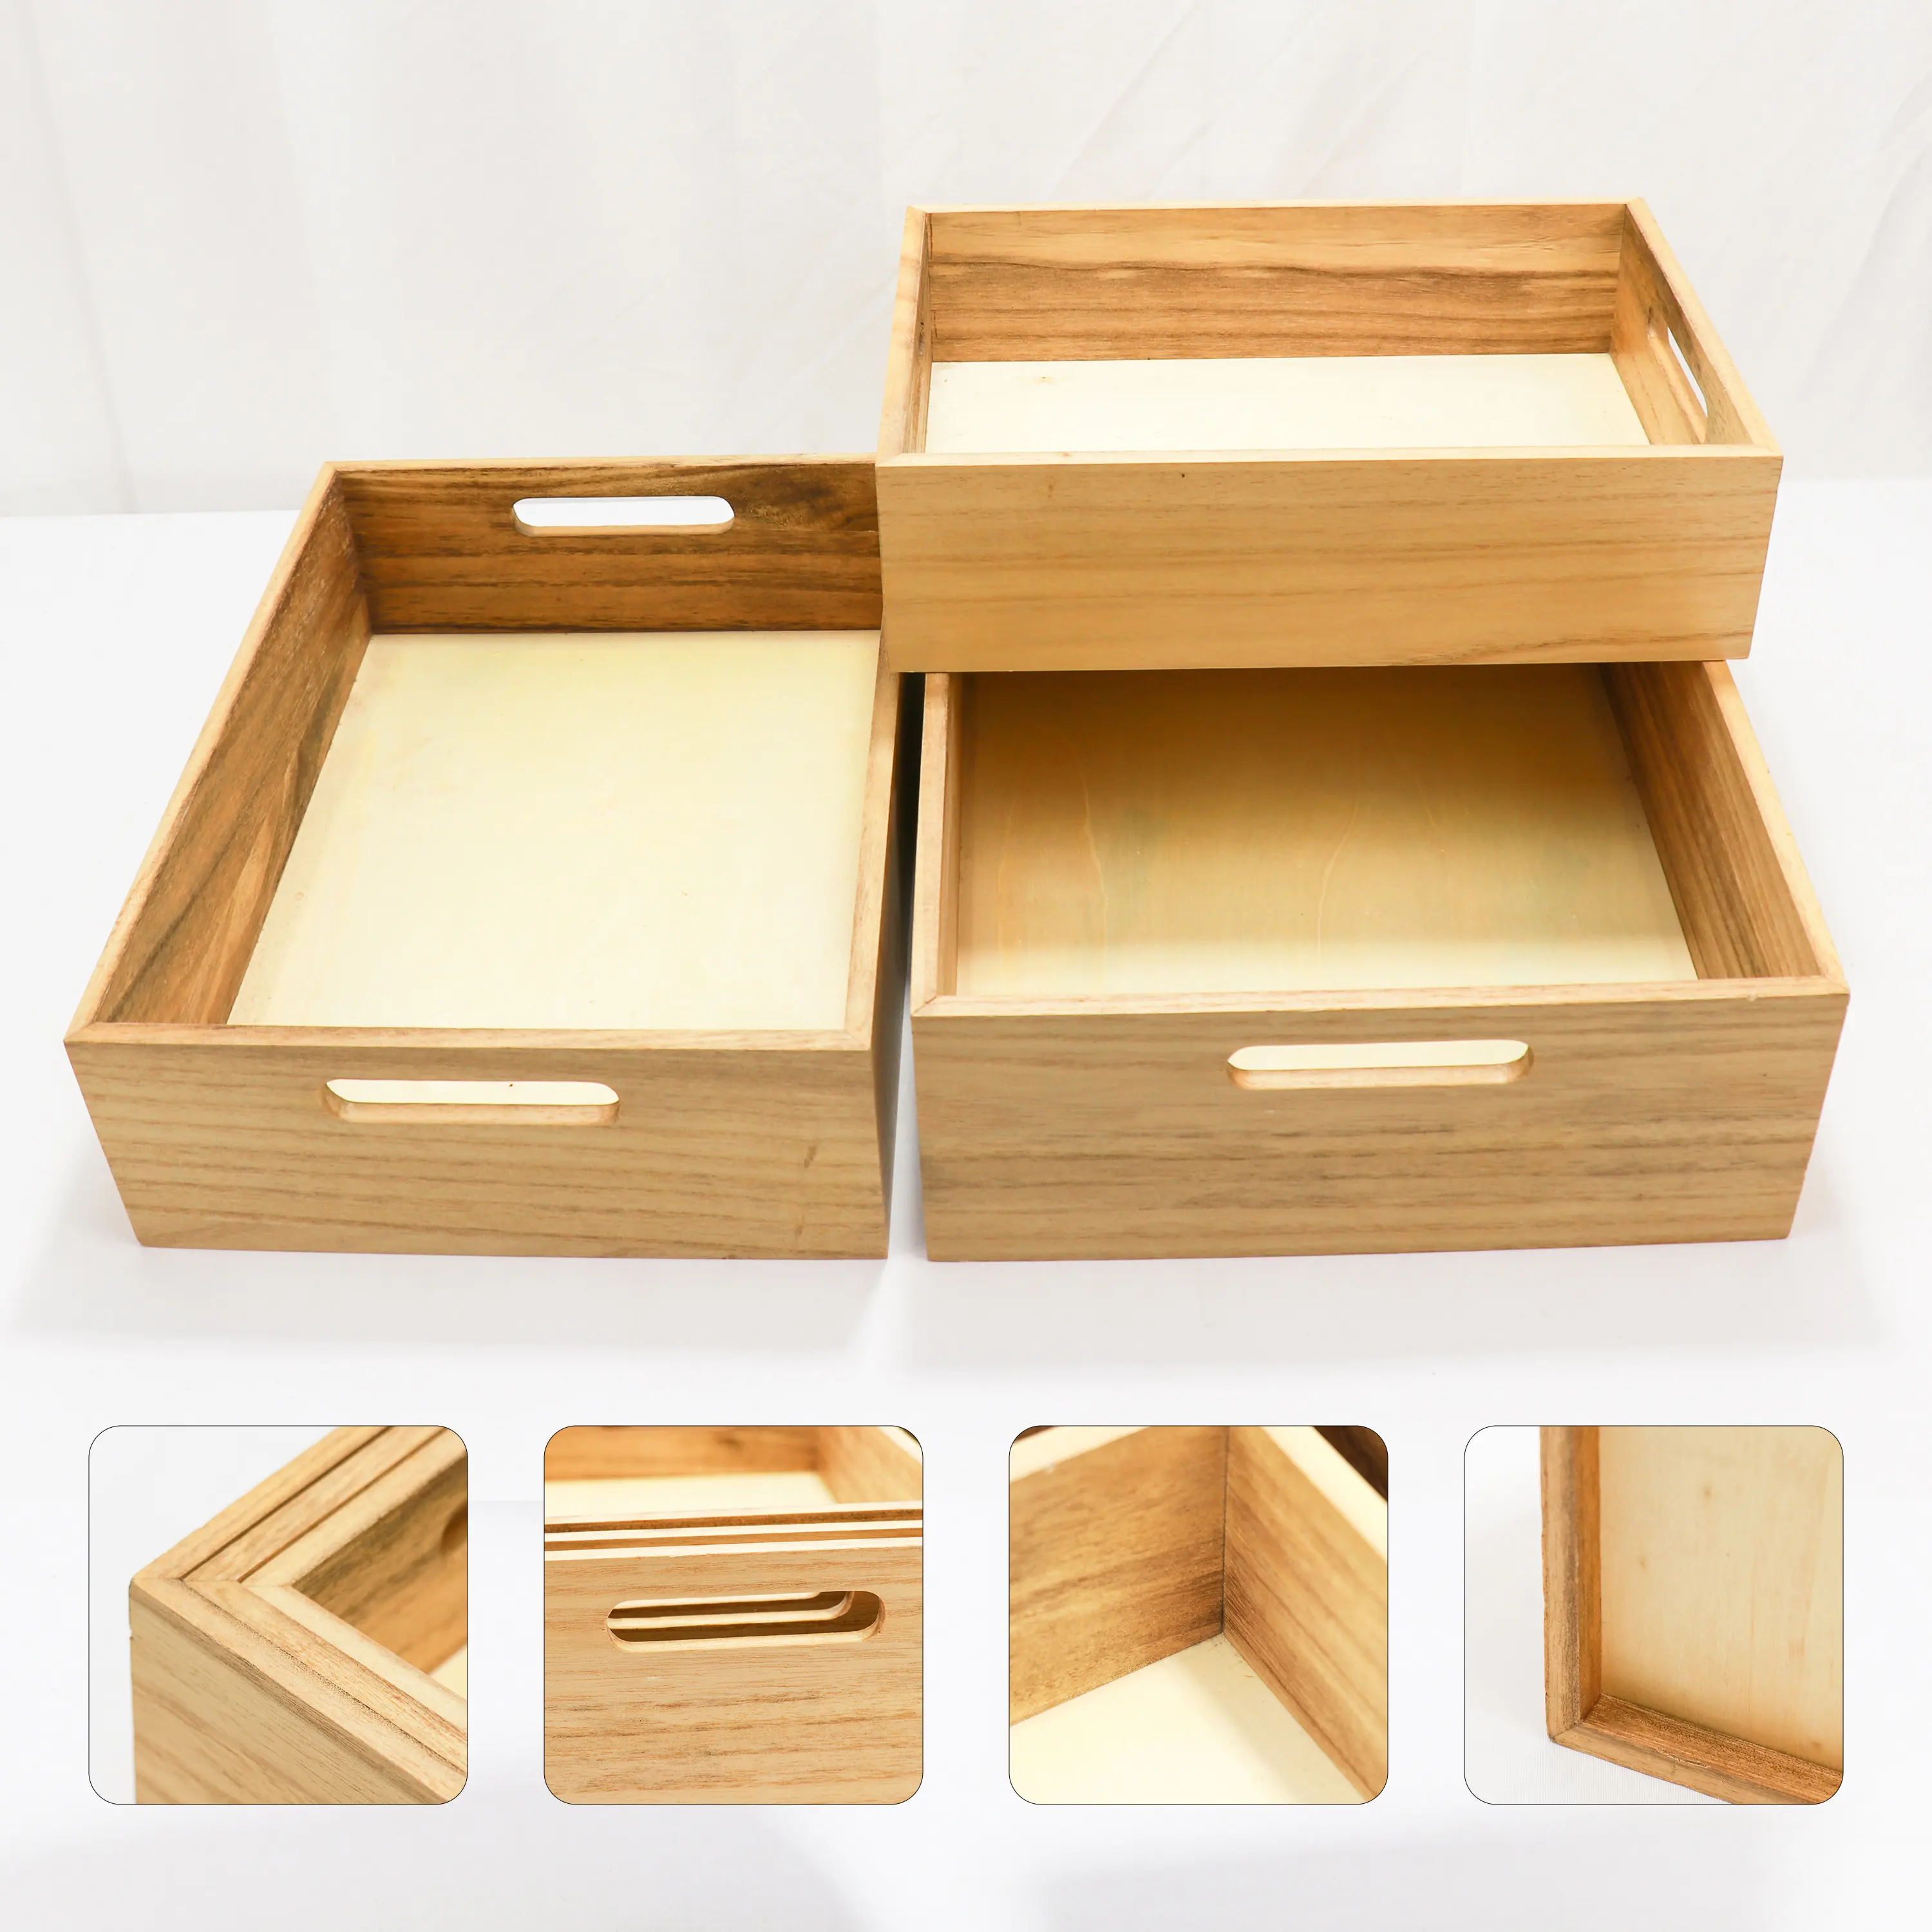 Caixas de madeira assentamento com alças Conjunto de 3 - Farmhouse Decor Recipientes De Armazenamento De Madeira/Portátil Rolling Tray Basket/Caixas